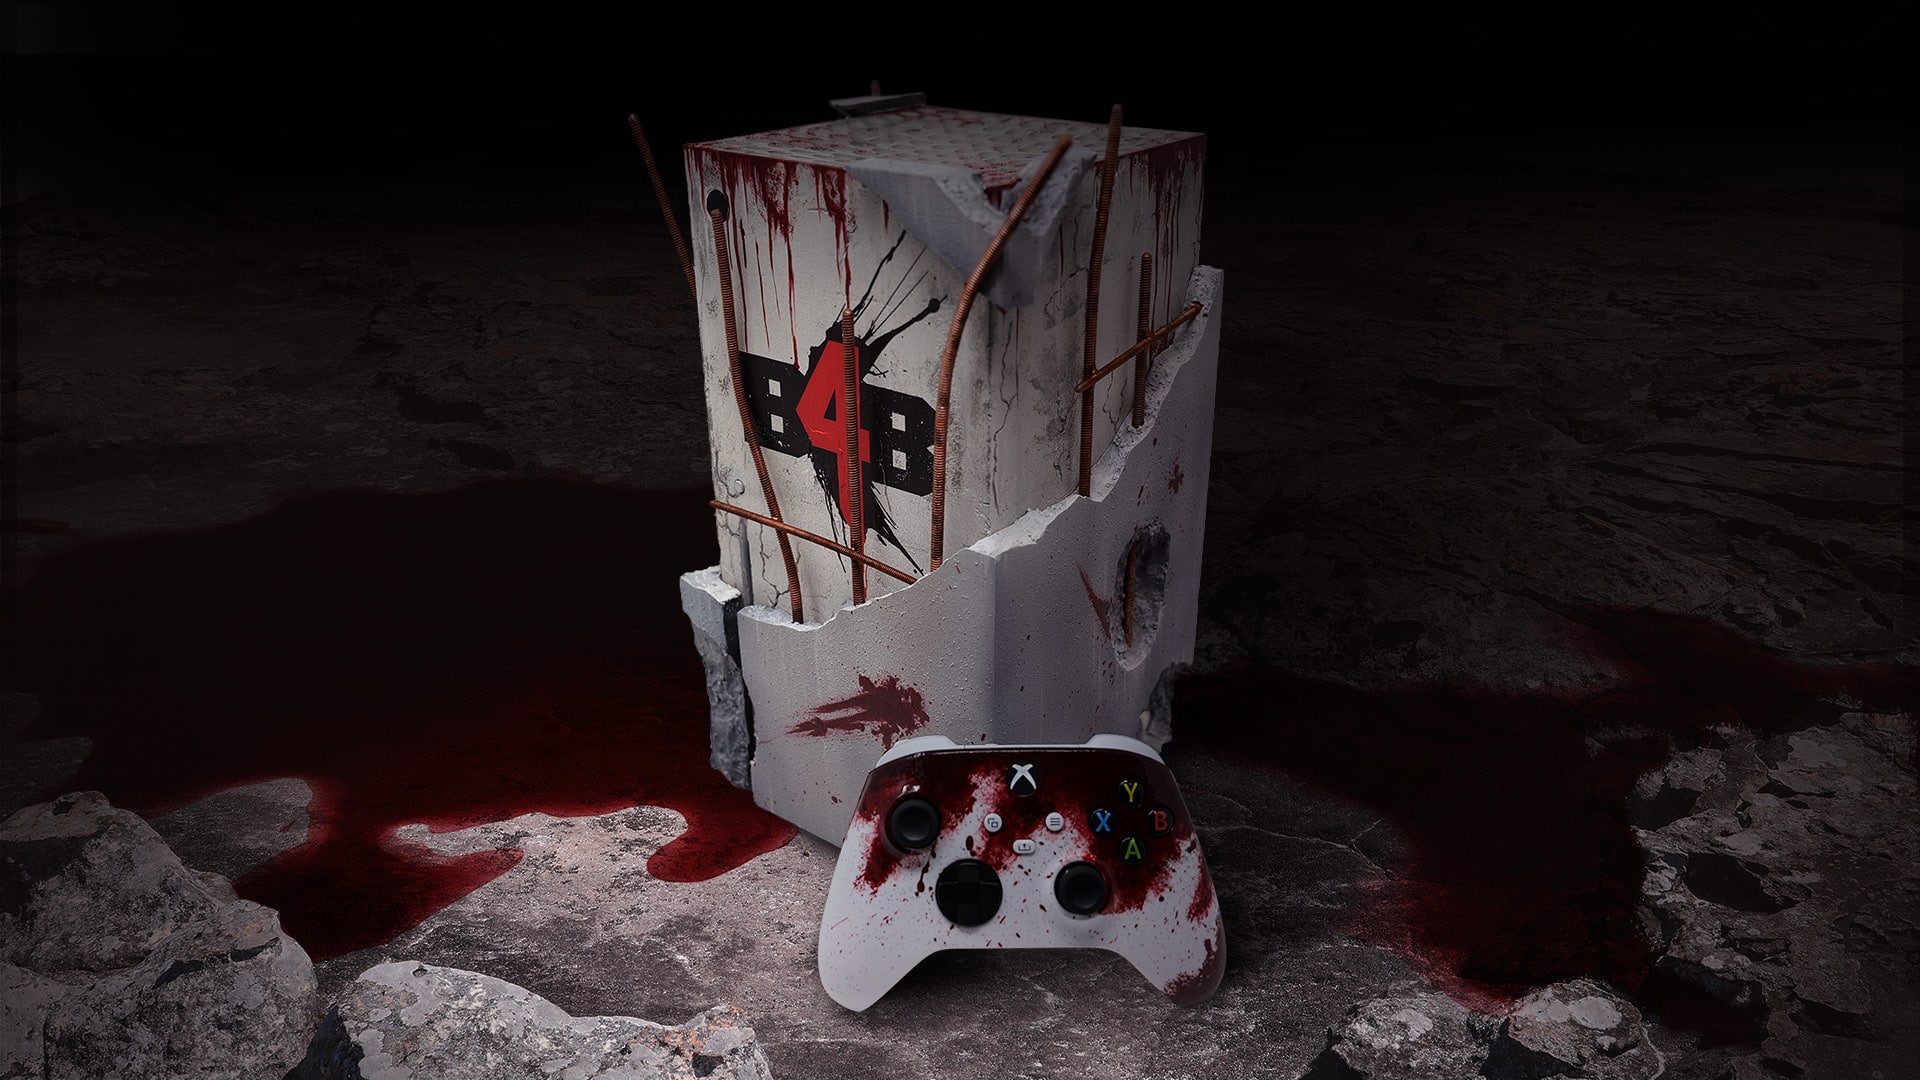 Aperçu de la console et manette Back 4 Blood customisée, avec un fond sombre et lugubre présentant un mélange de ciment et de sang bourgogne.